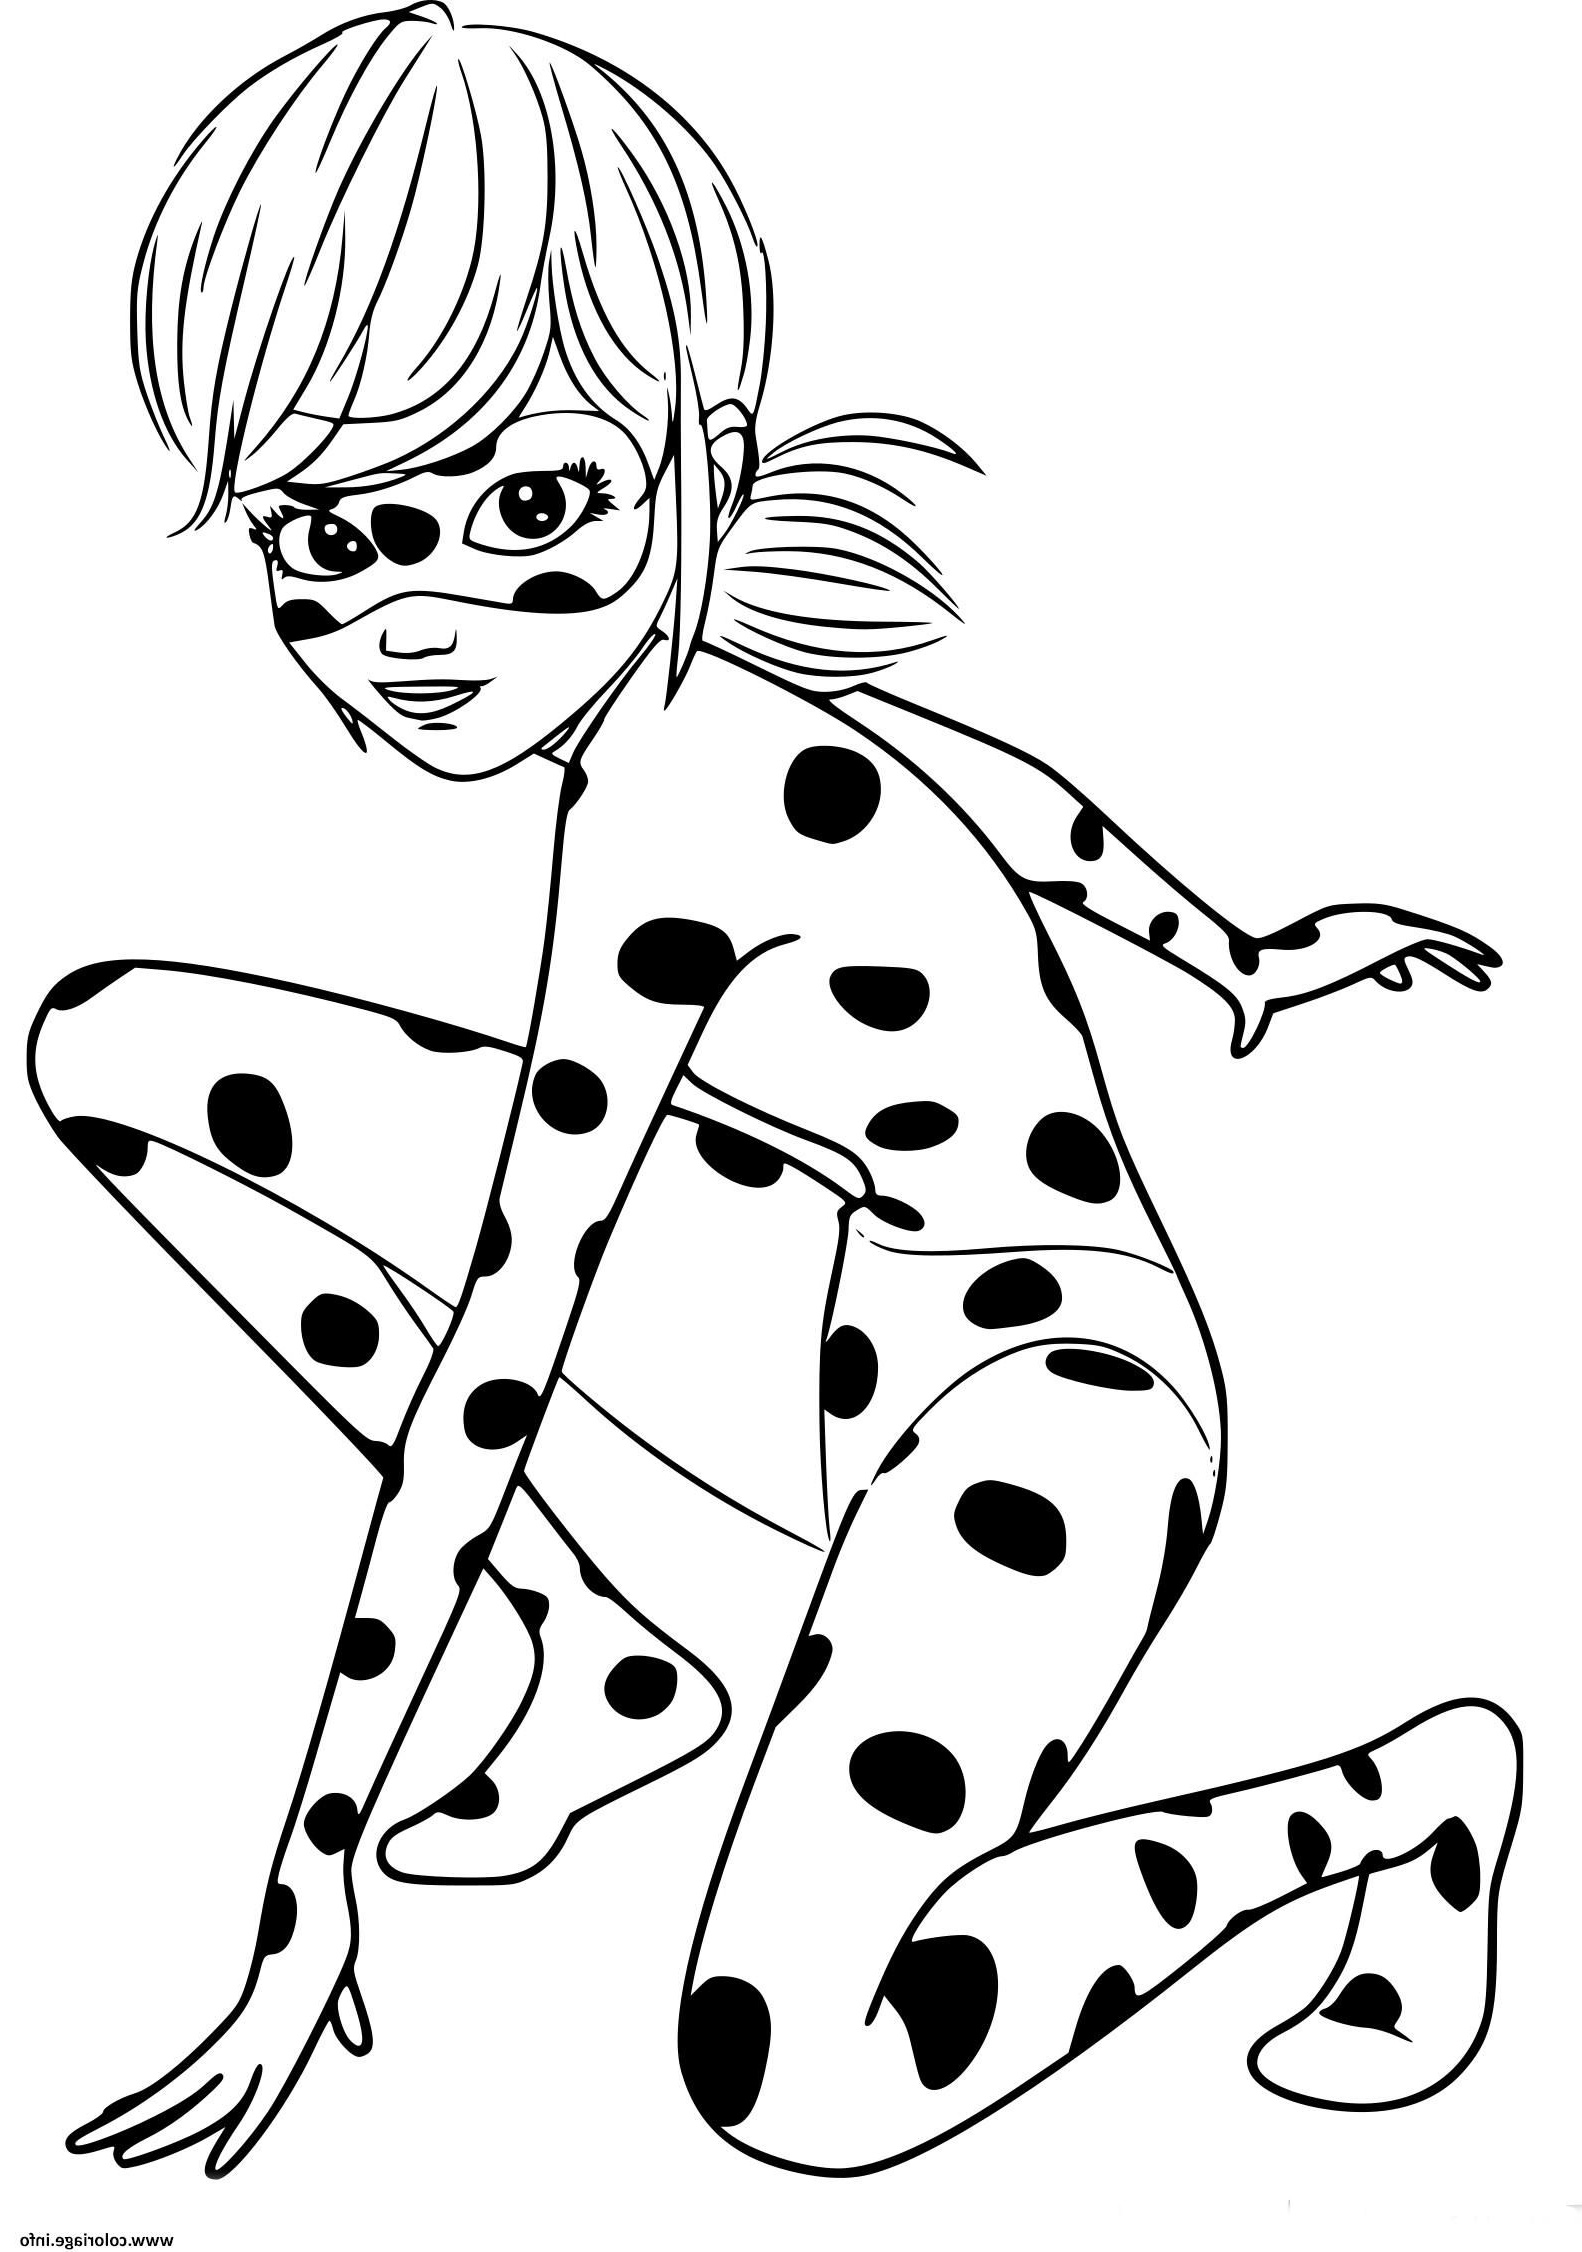 Dessin à Colorier Chat Nouveau Galerie Coloriage Ladybug Miraculous Chat Noir original à Imprimer